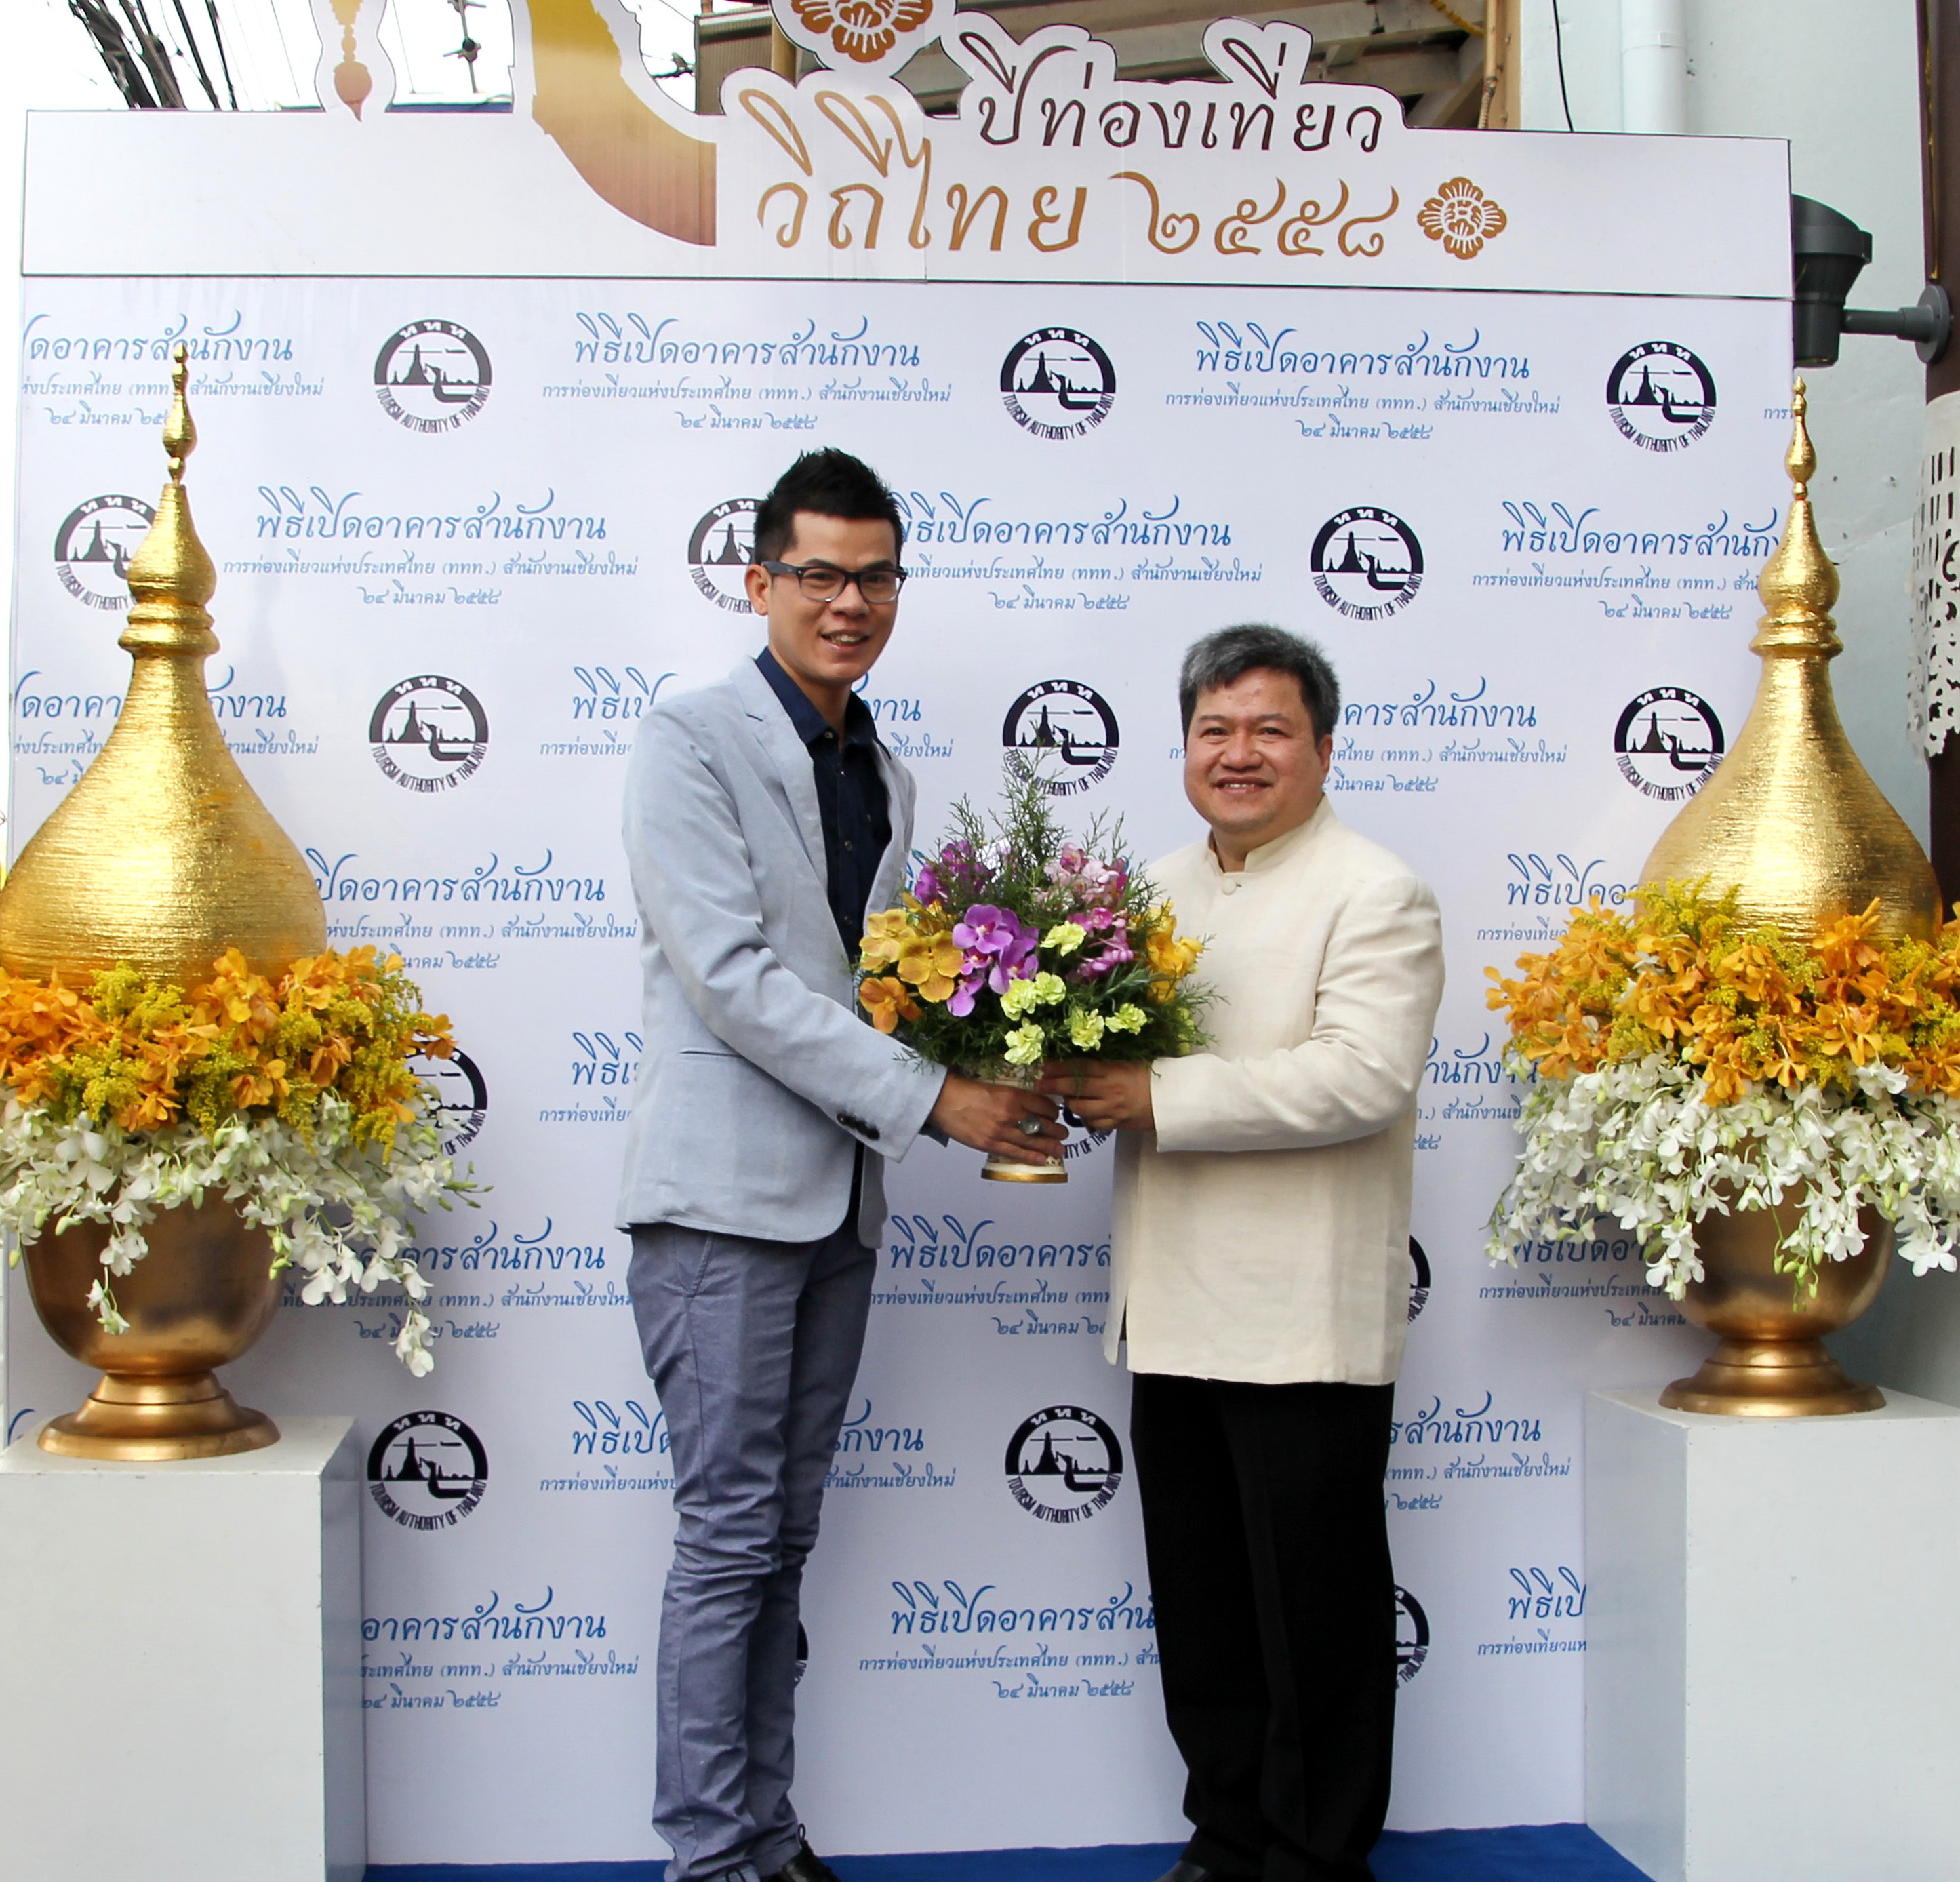 ร่วมพิธีทำบุญและพิธีเปิดอาคารสำนักงานการท่องเที่ยวแห่งประเทศไทย สำนักงานเชียงใหม่